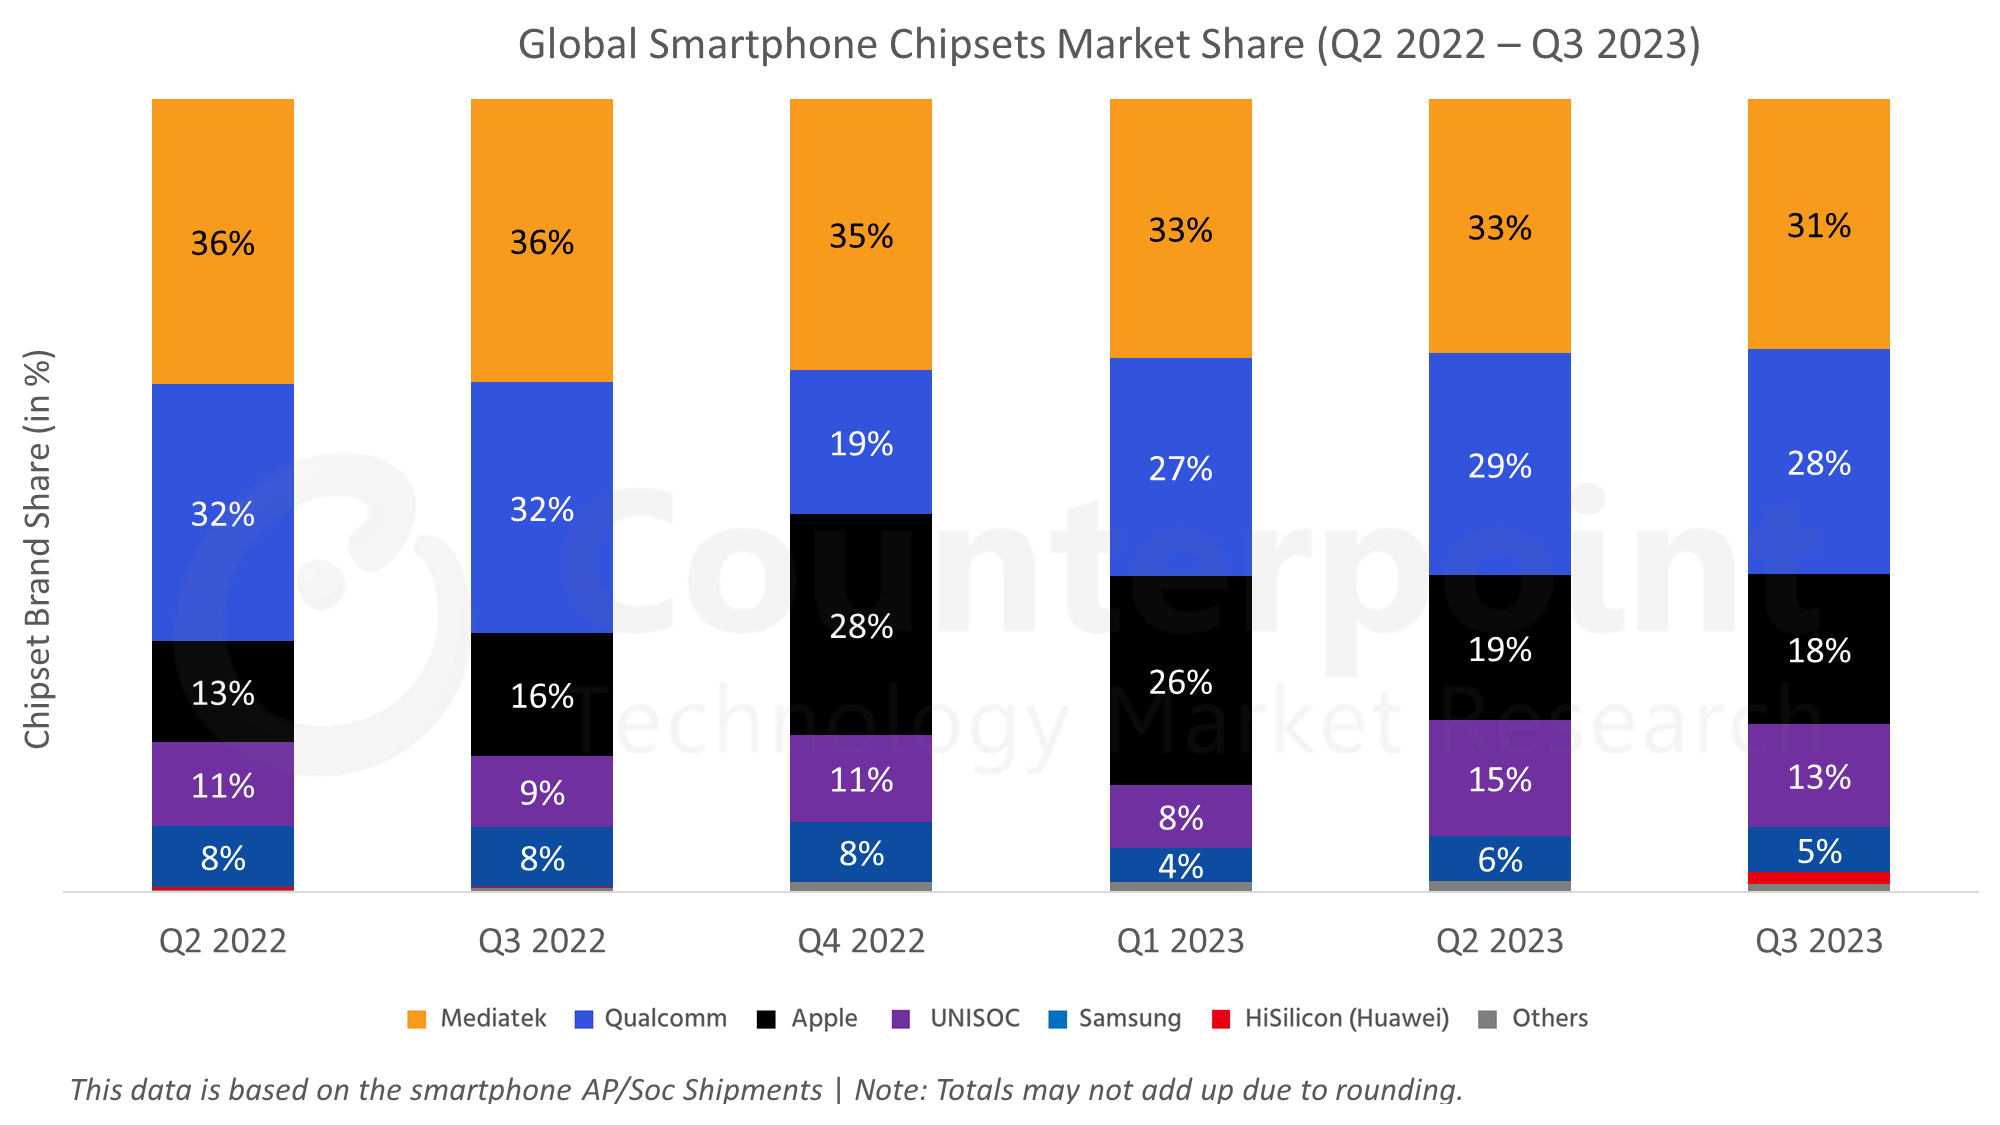 Global Smartphone Chipsets Market Share Q3 2023